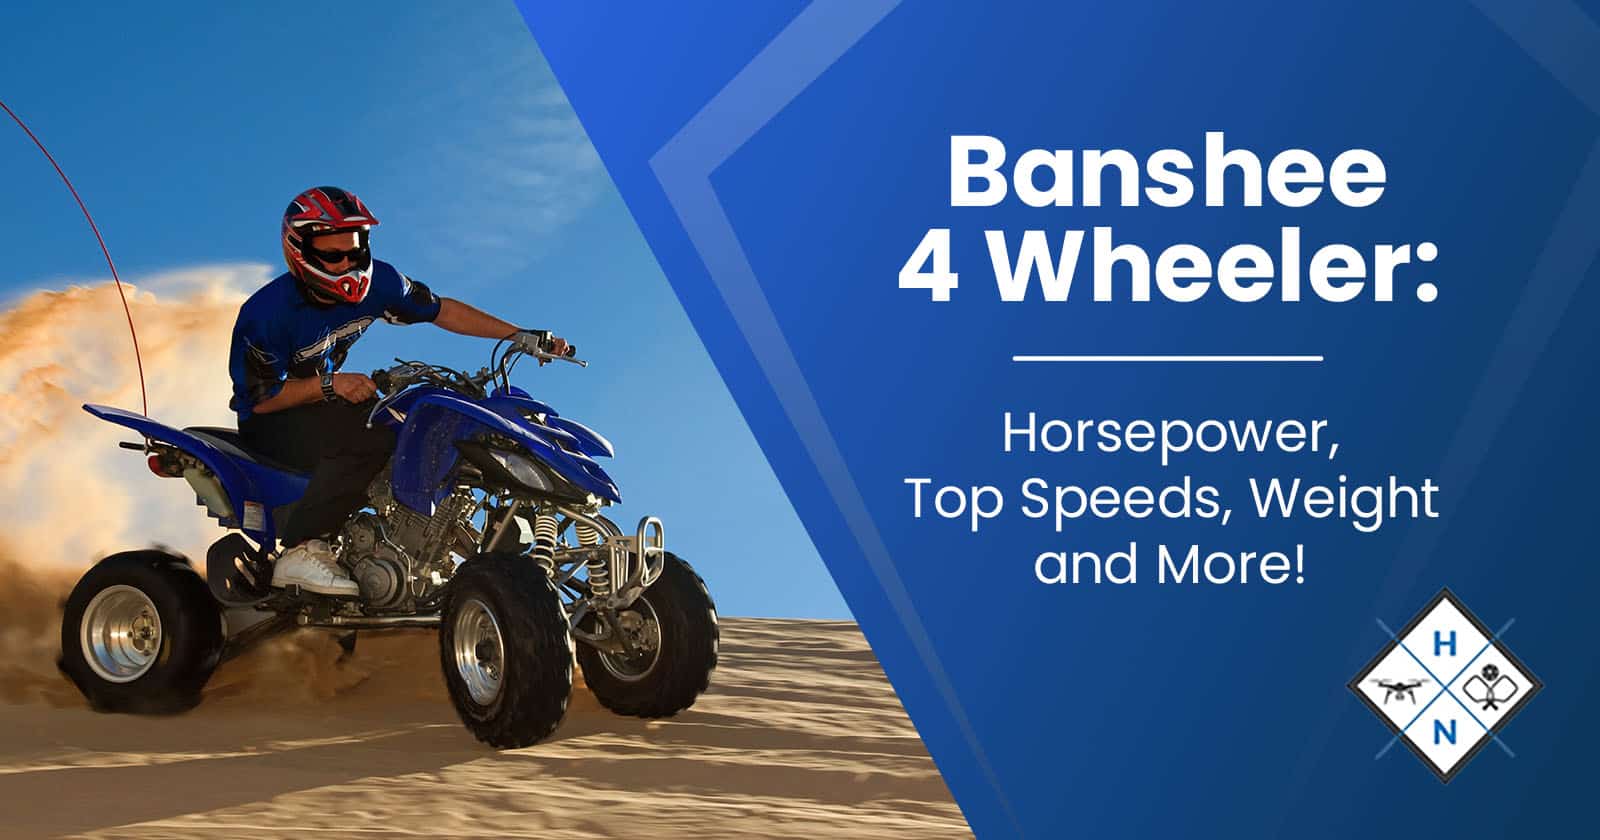 Banshee 4-Wheeler: Horsepower, Top Speeds, Weight, and More!